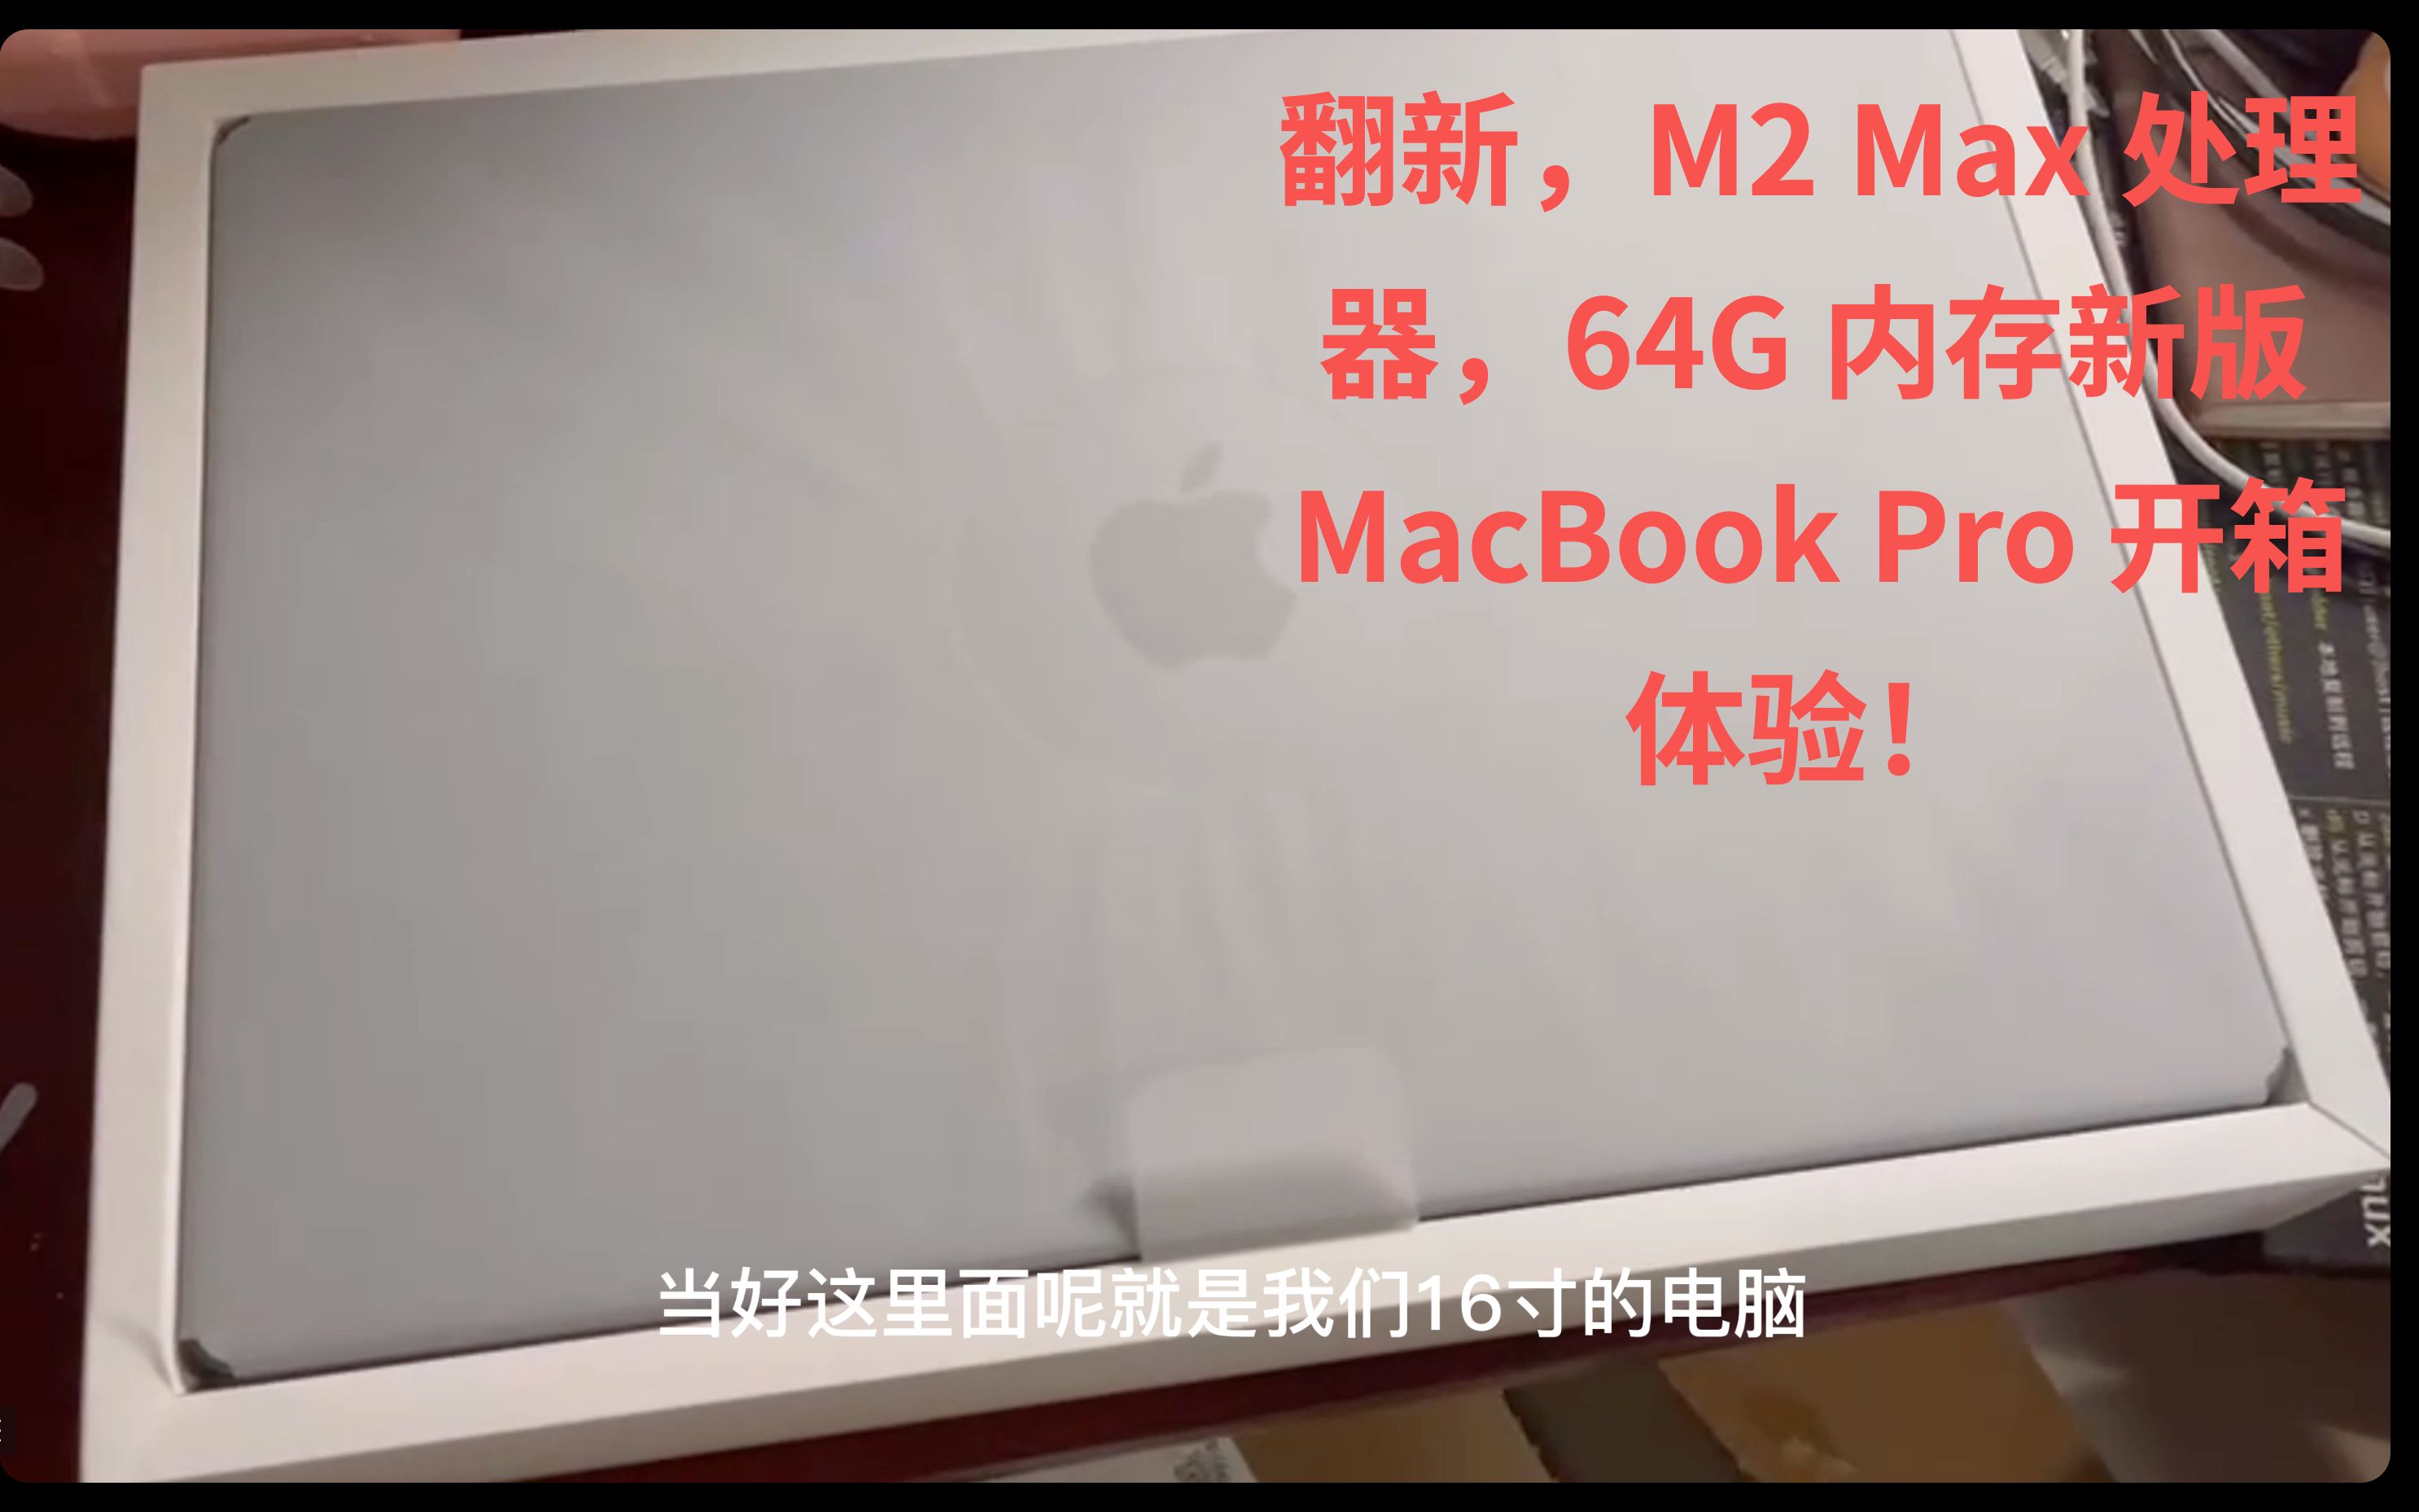 搭载 M2 Max 处理器，64G 内存，独霸前端开发舞台！新版 MacBook Pro 开箱体验！